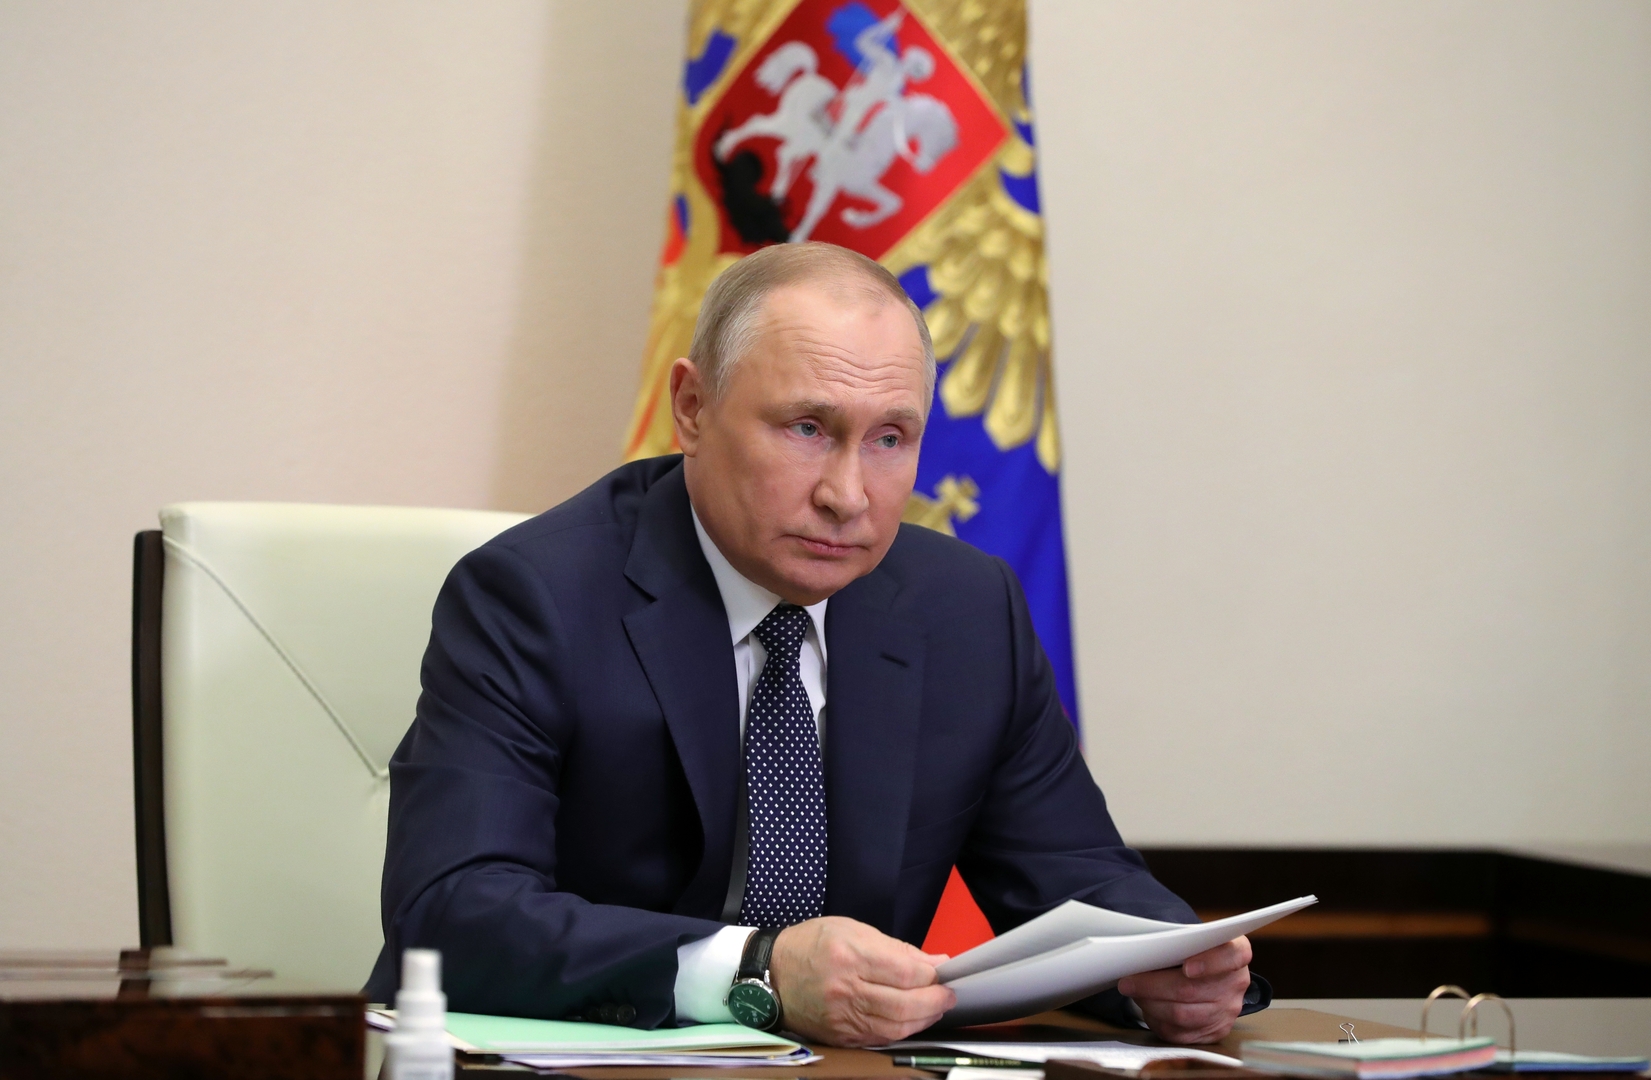 بوتين يهدد أوروبا باتخاذ إجراءات انتقامية بسبب الضغوط على 